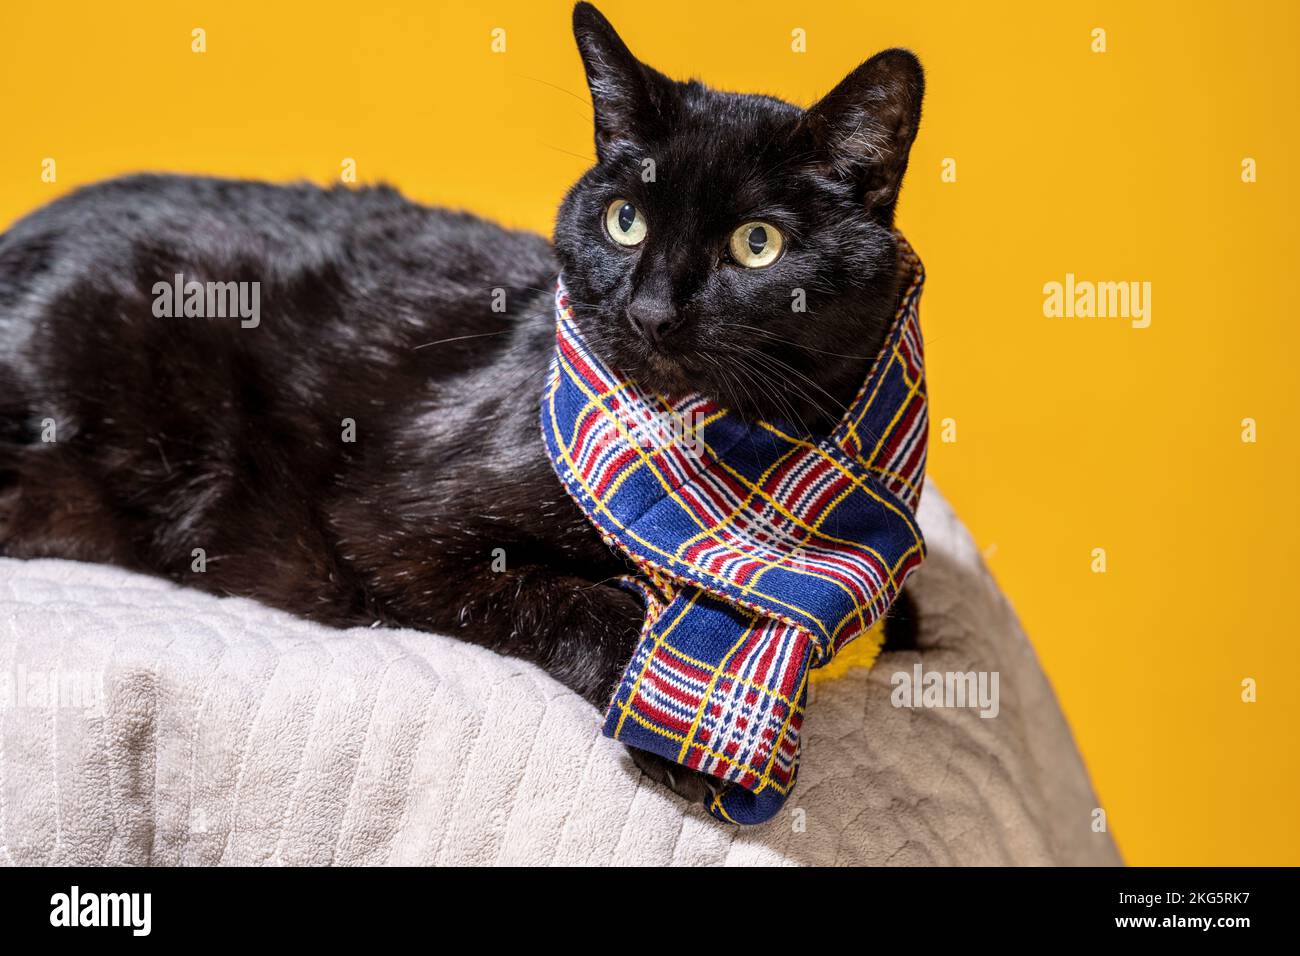 Viejo gato negro tumbado usando una bufanda | Mango de fondo amarillo Foto de stock